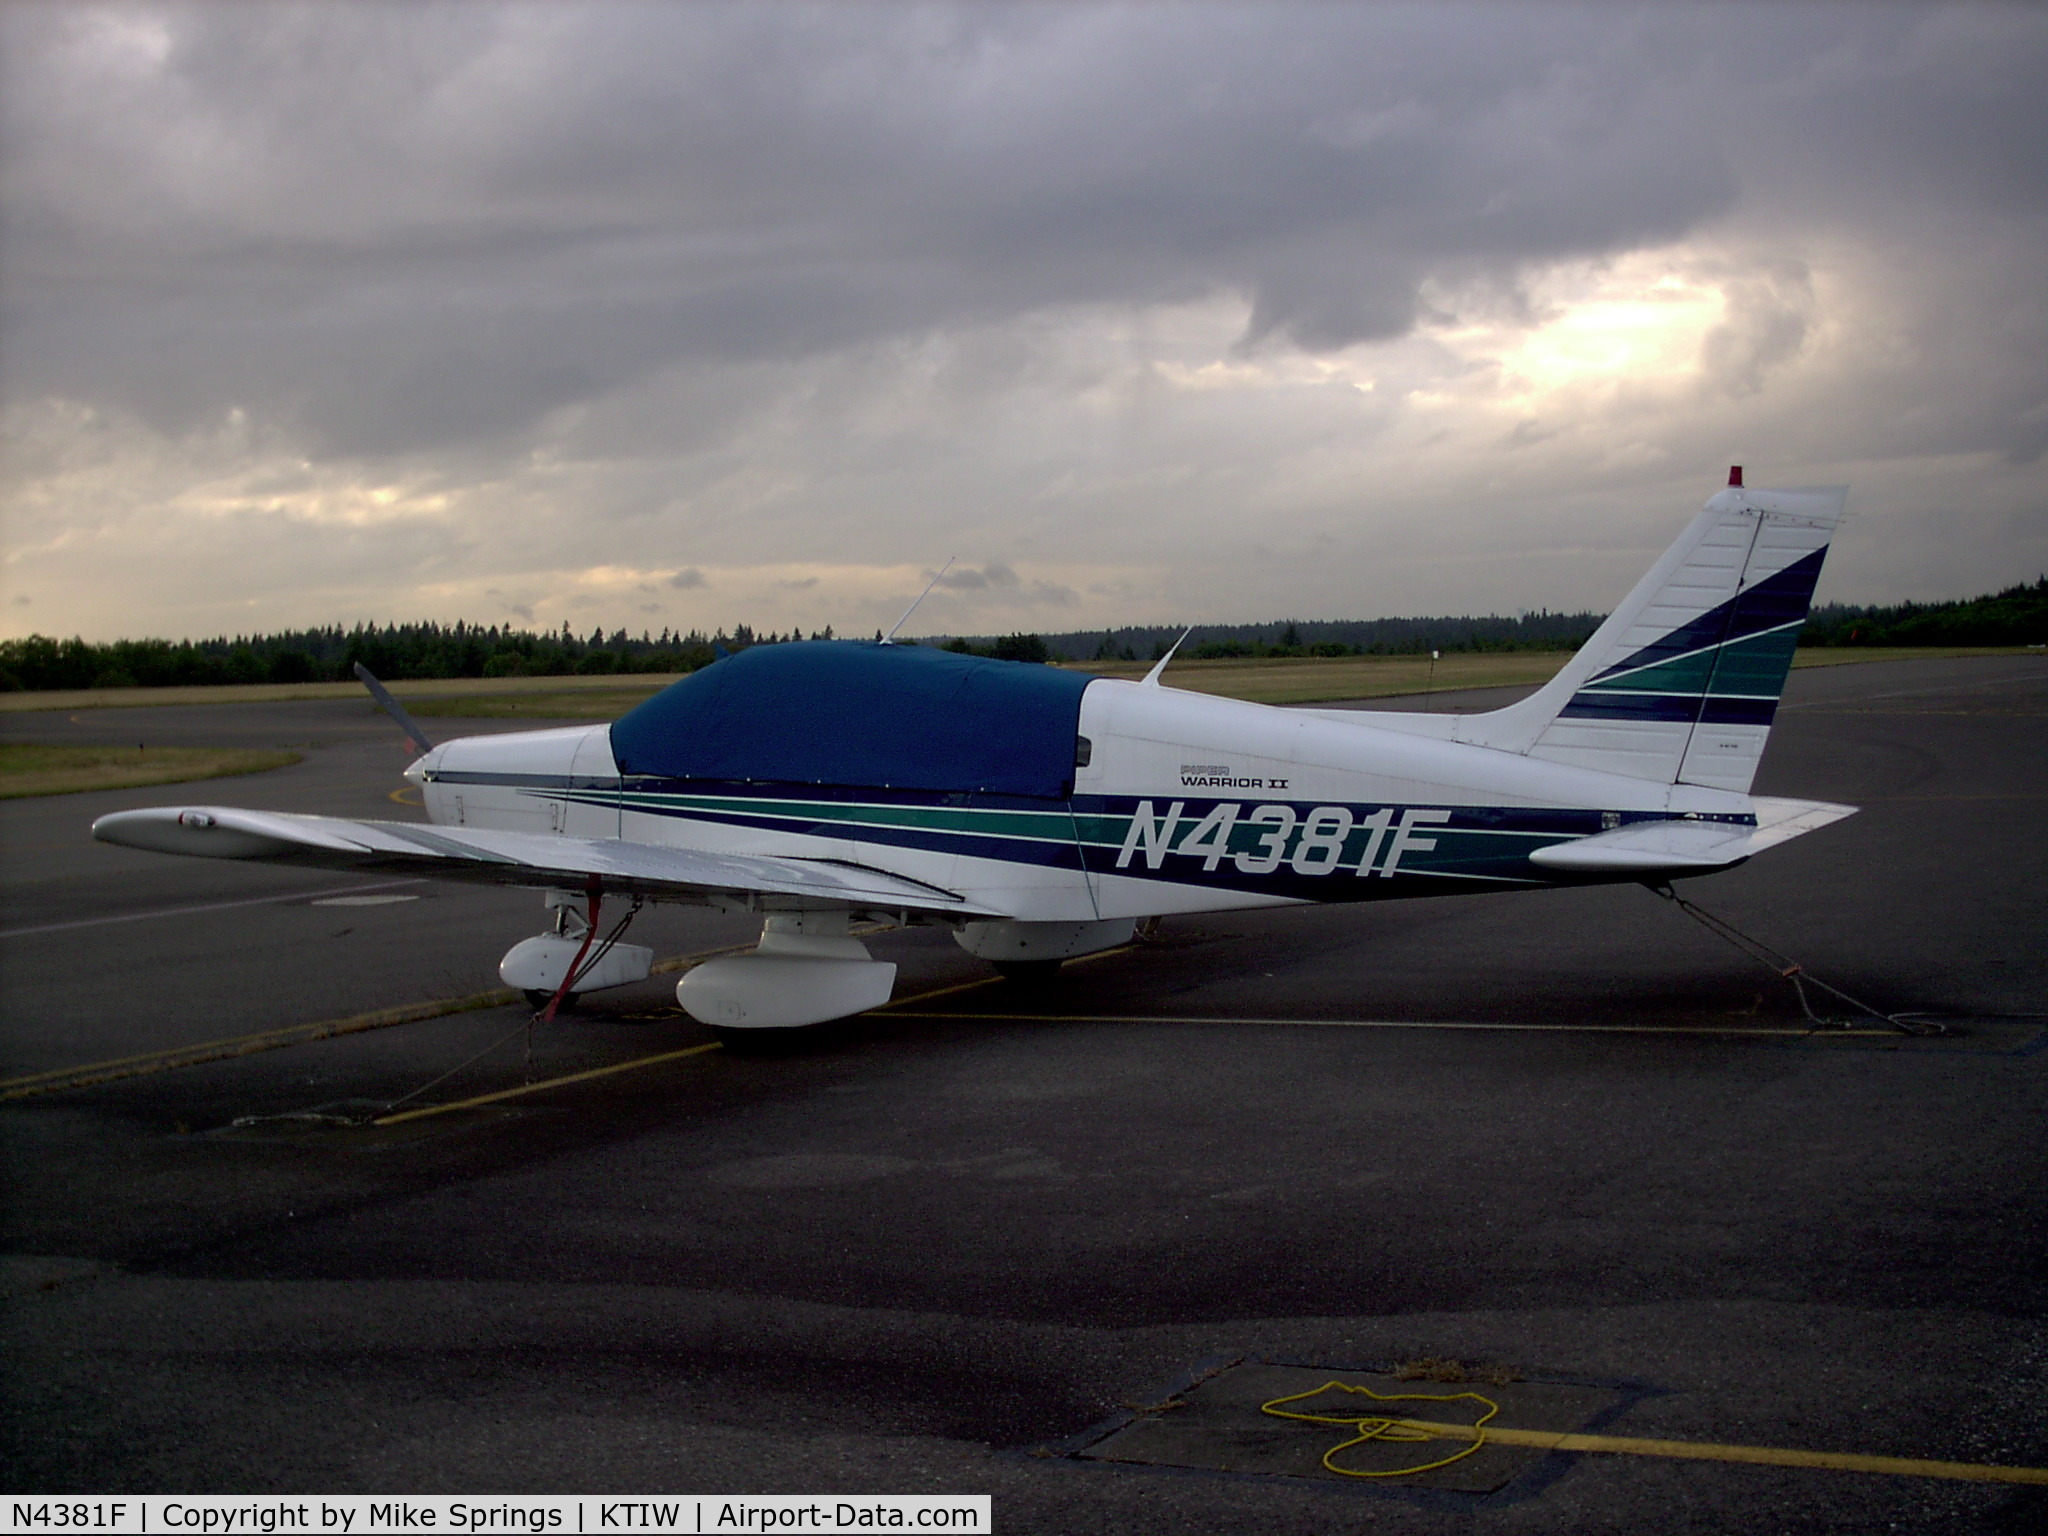 N4381F, Piper PA-28-161 C/N 28-8516015, taken at TIW